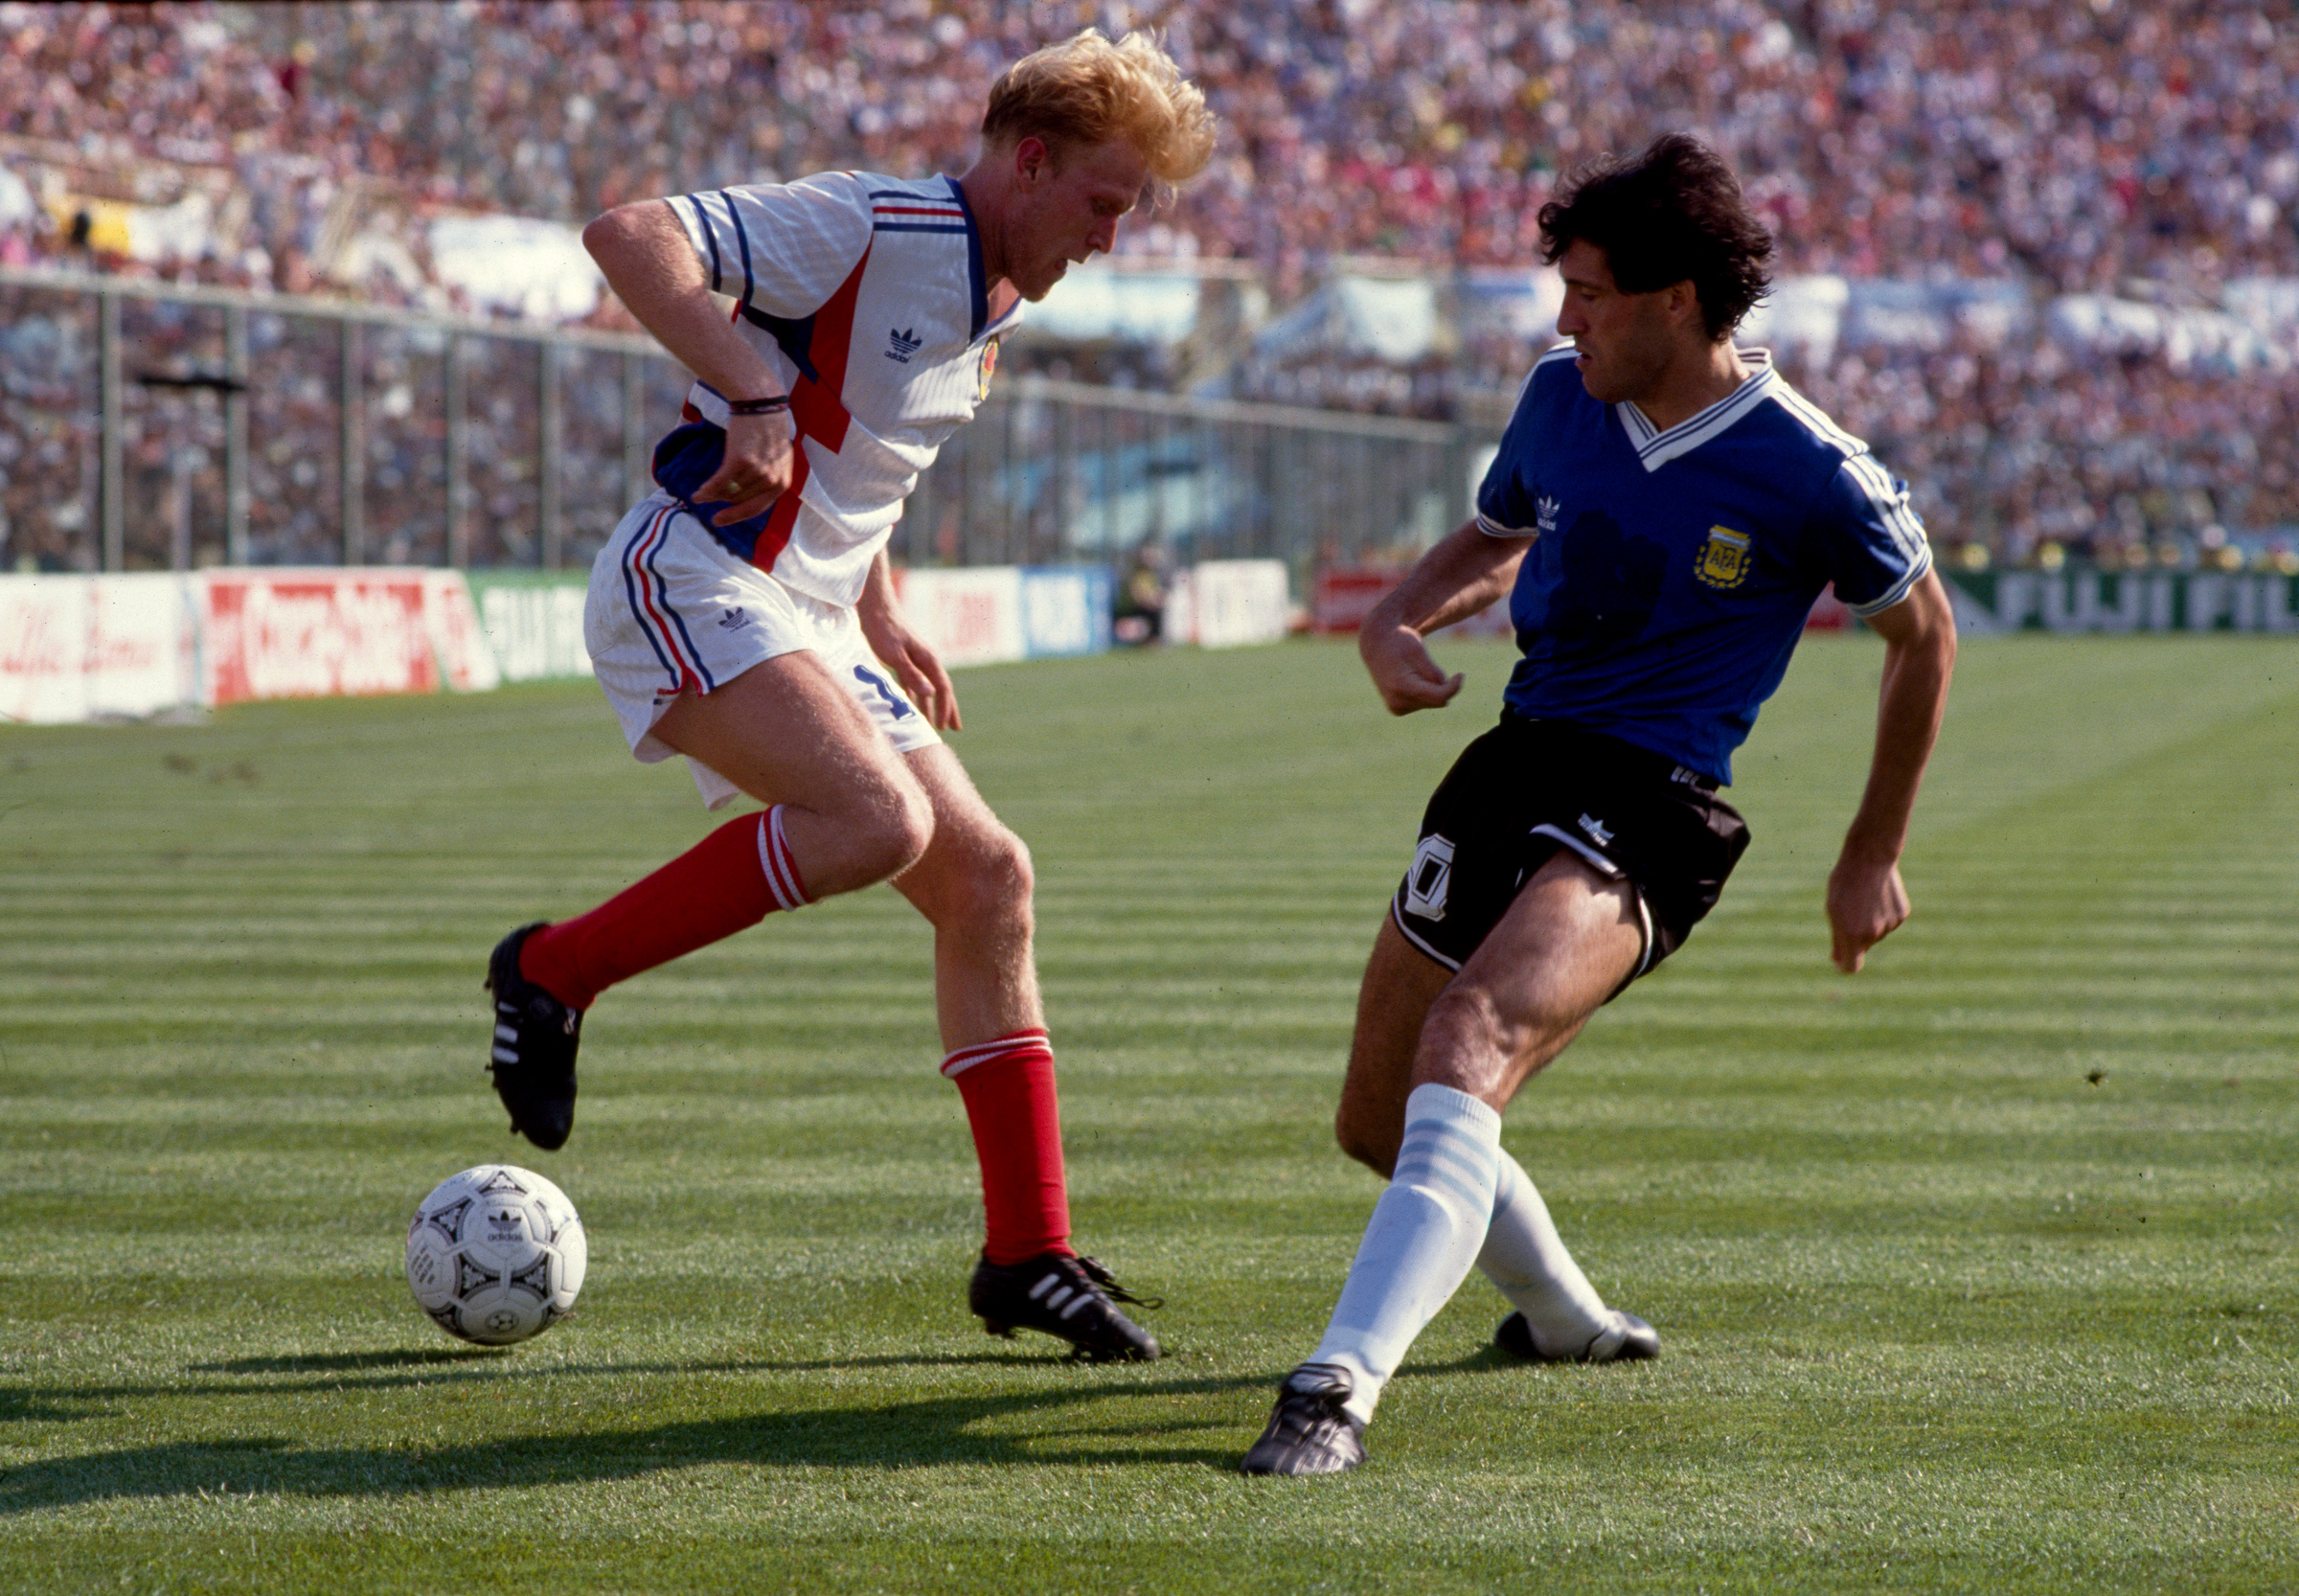 Югославия – Аргентина. Роберт Просинецкий из Югославии (слева) пытается обыграть Хуана Симона (справа) из Аргентины. Фото © Getty Images